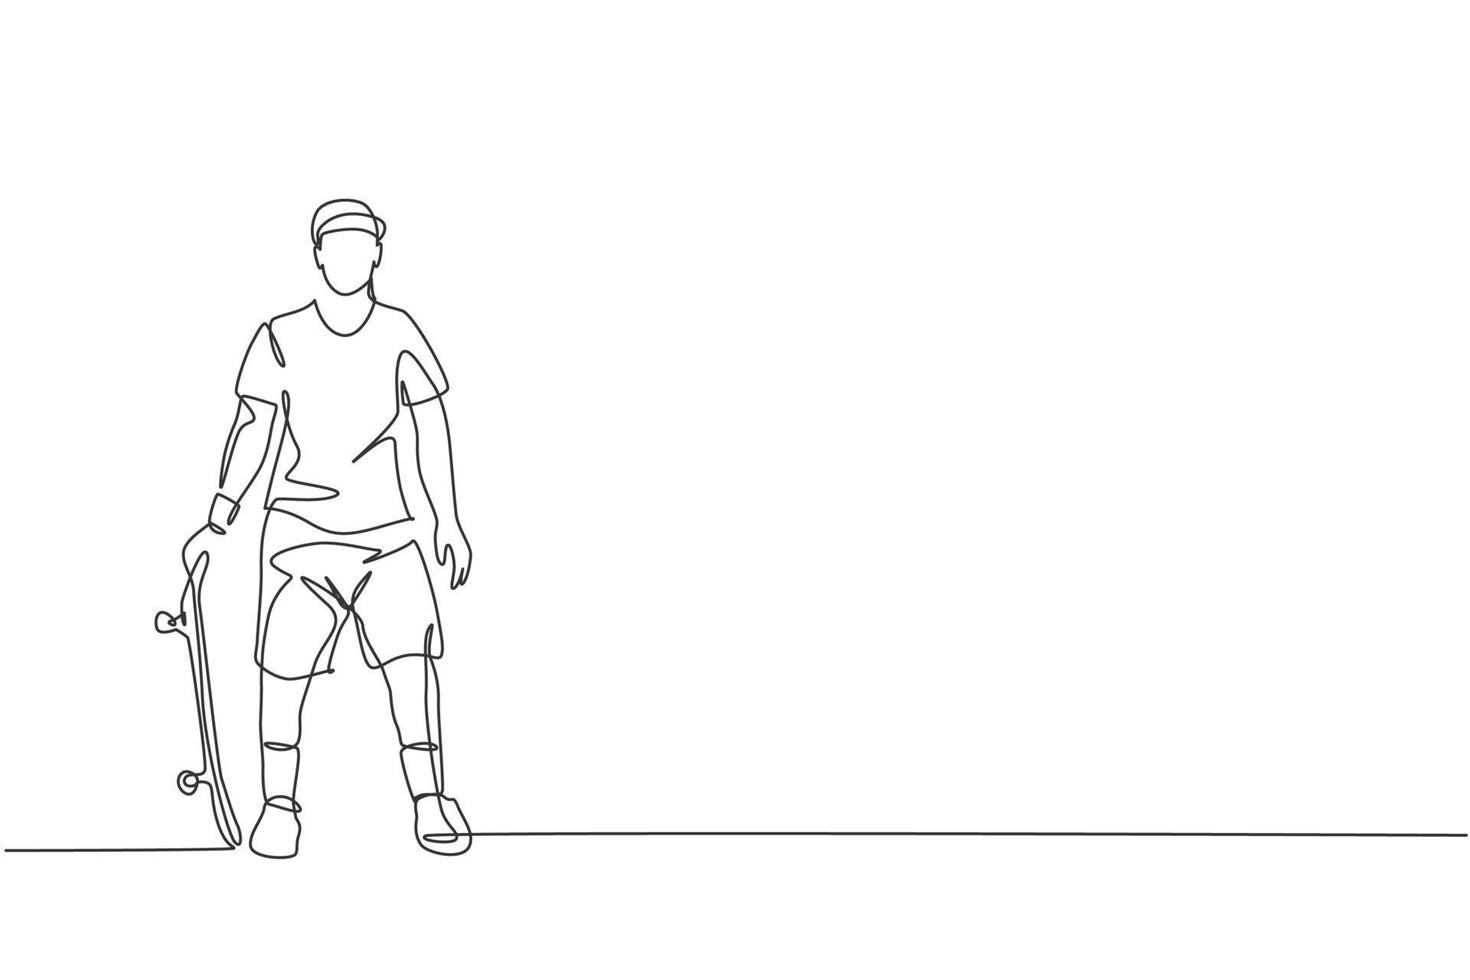 um desenho de linha contínua do jovem skatista legal segurando o skate e pose elegante no skatepark. conceito de esporte radical adolescente. ilustração em vetor design gráfico de desenho gráfico de linha única dinâmica